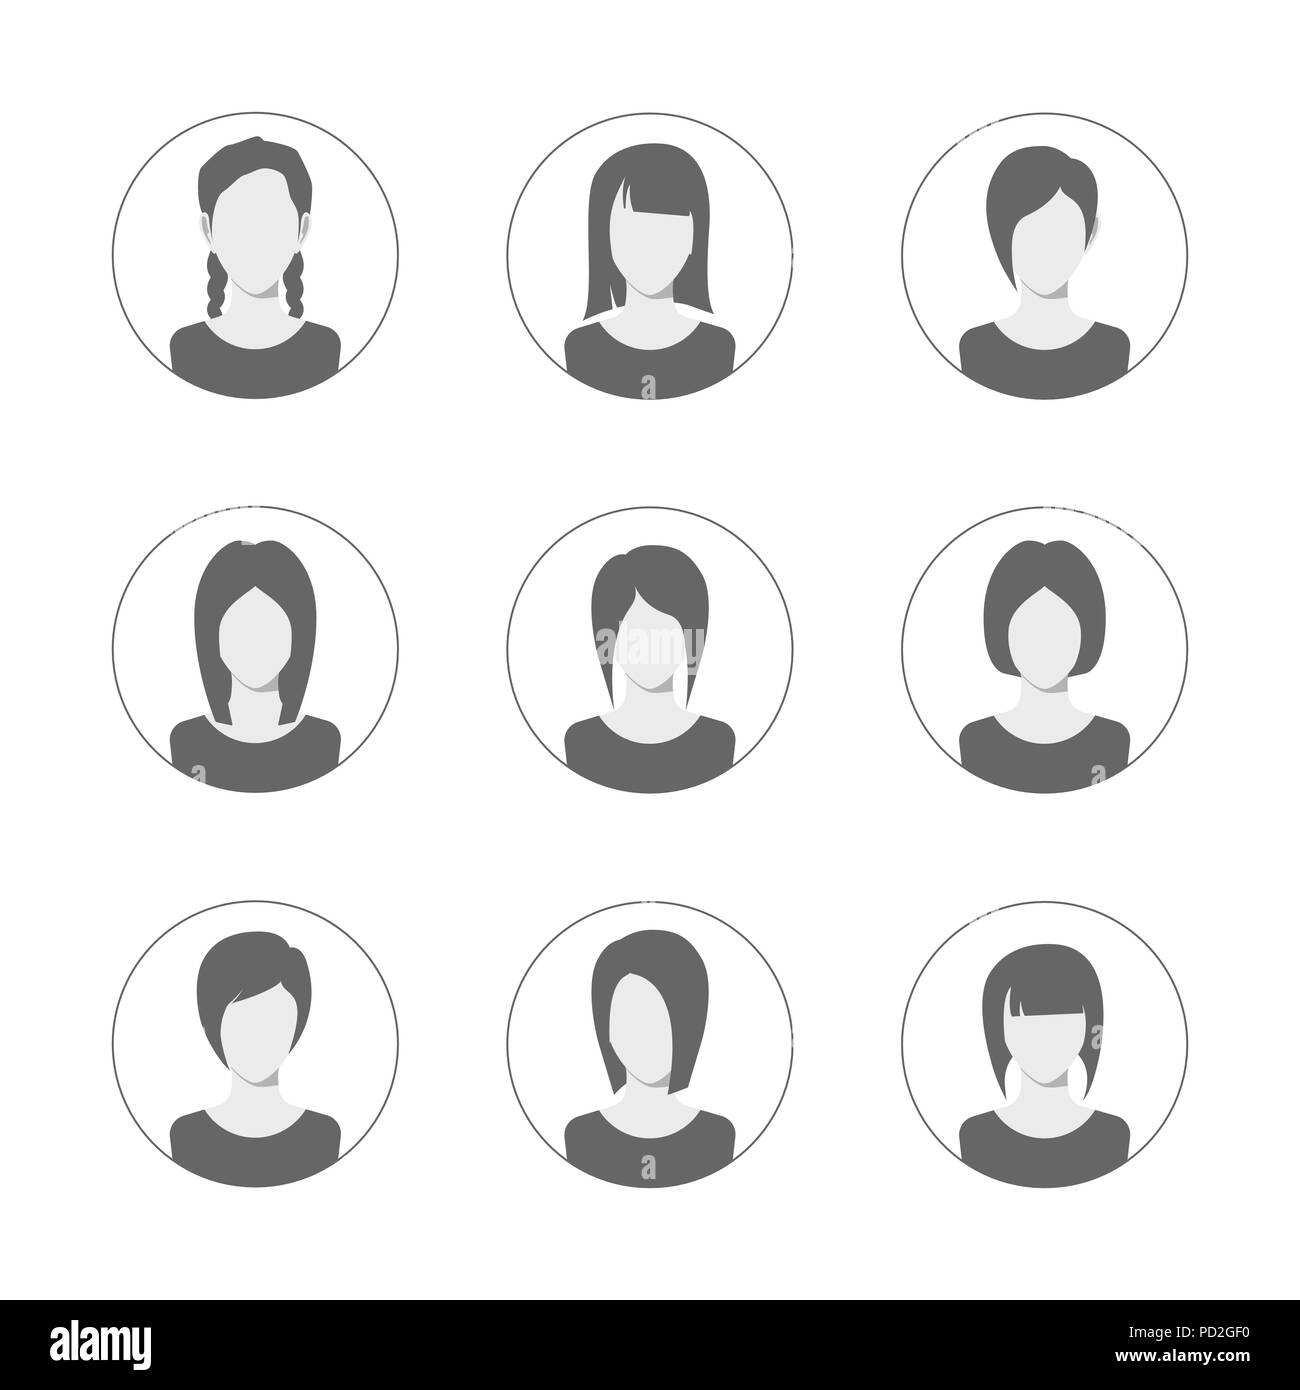 App o profilo utente icona set. Serie di donne avatar modello. Utente raccolta di icone. Simbolo del popolo per il sito web avatar. Illustrazione Vettoriale Illustrazione Vettoriale